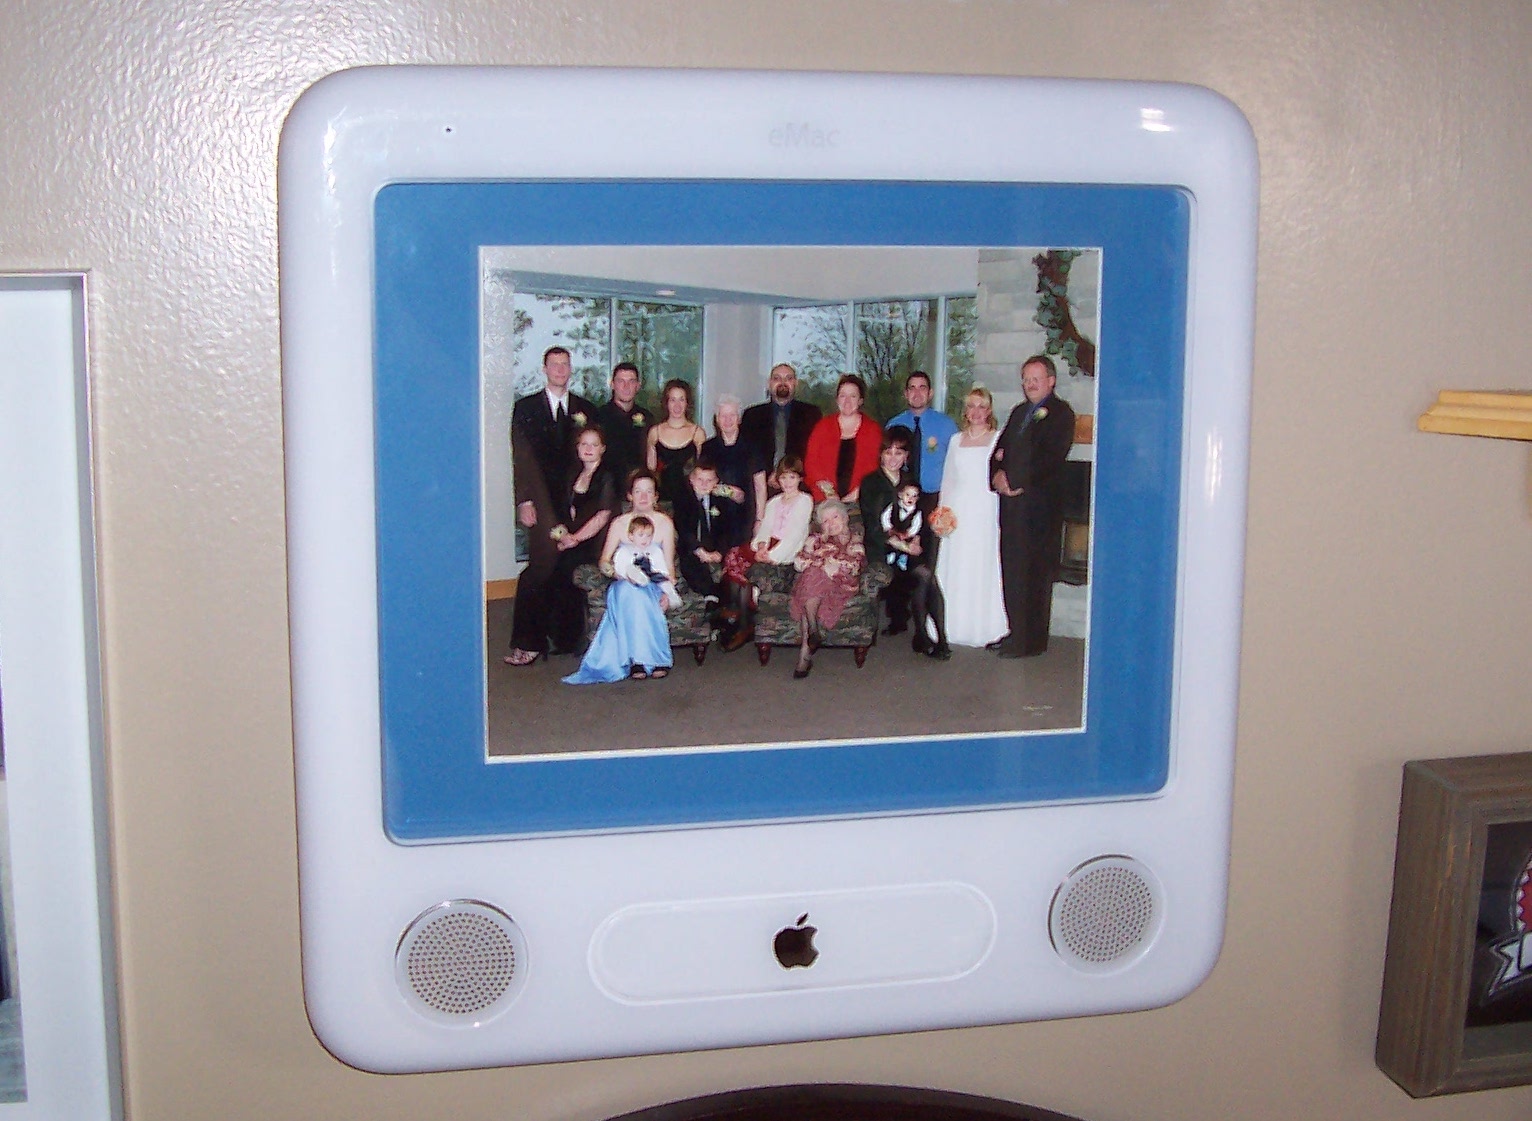 eMac photo frame